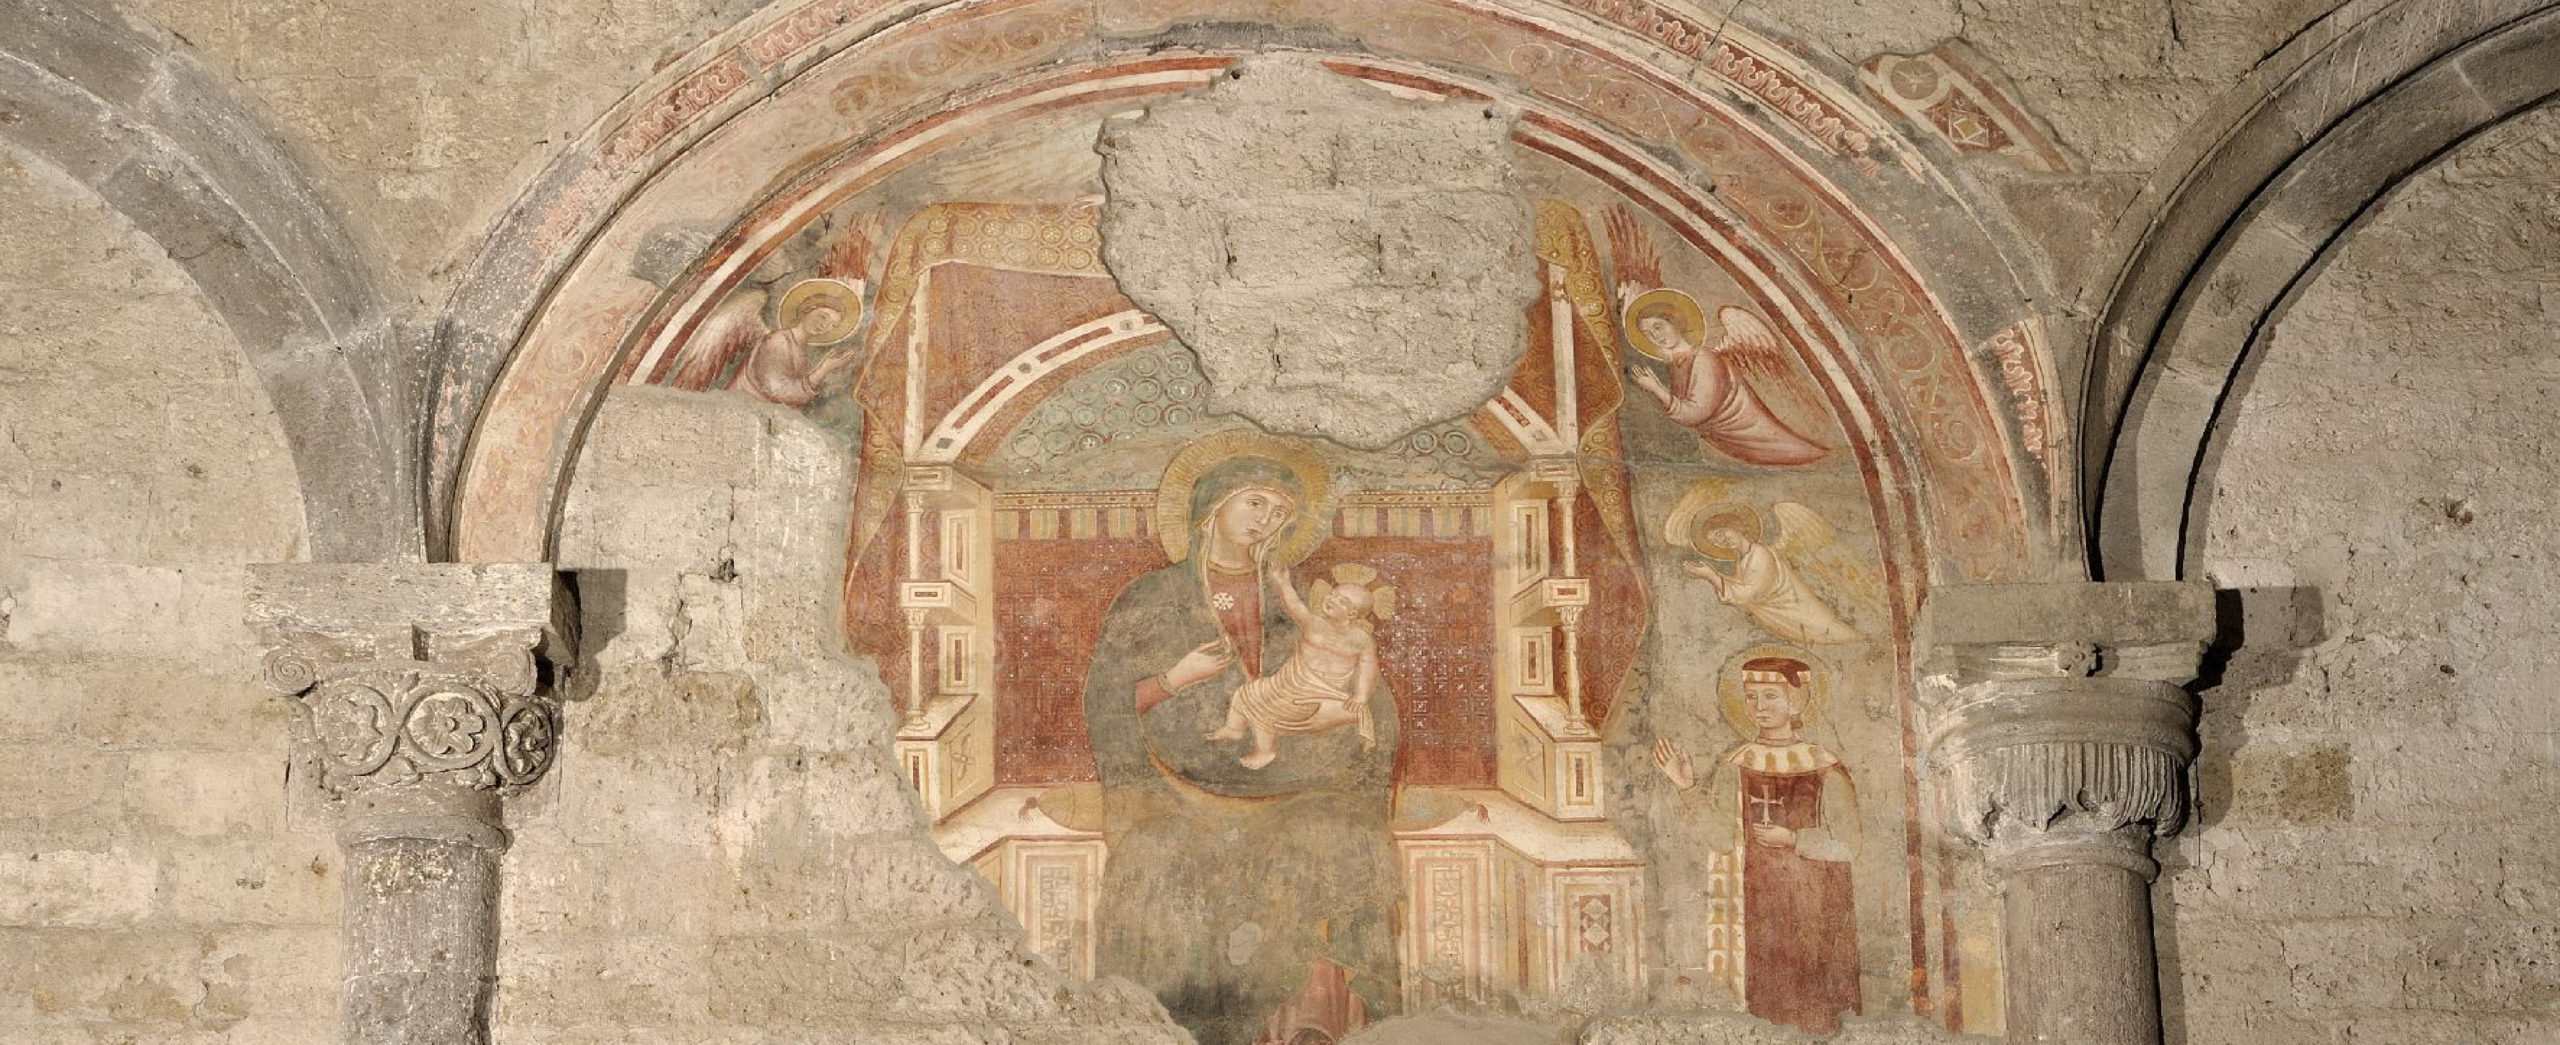 Tuscania - Affresco medievale nella basilica di Santa Maria Maggiore